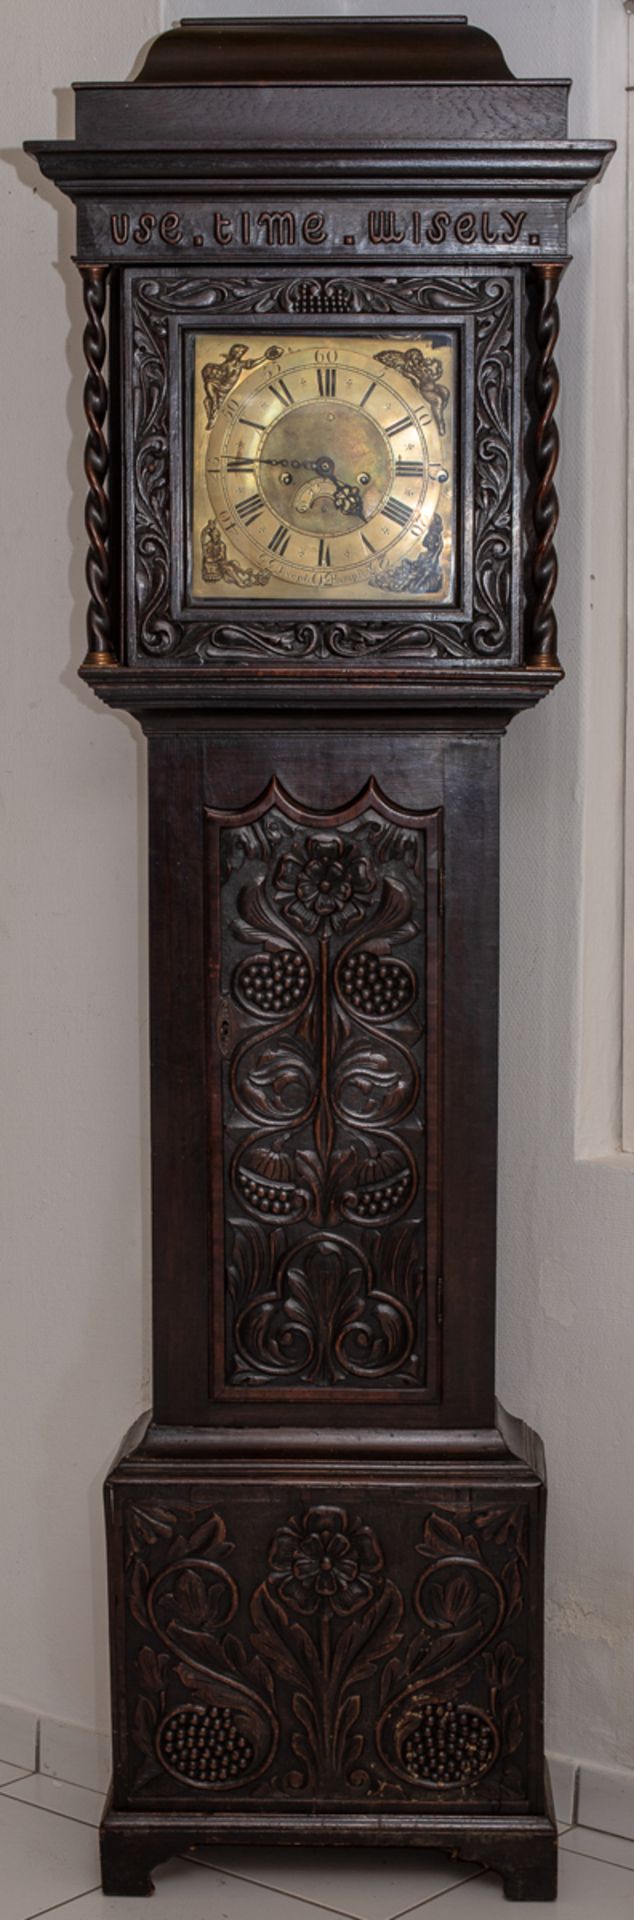 Englische Standuhr mit reich beschnitztem Kasten und Carillon, Werk signiert Joseph Hampson